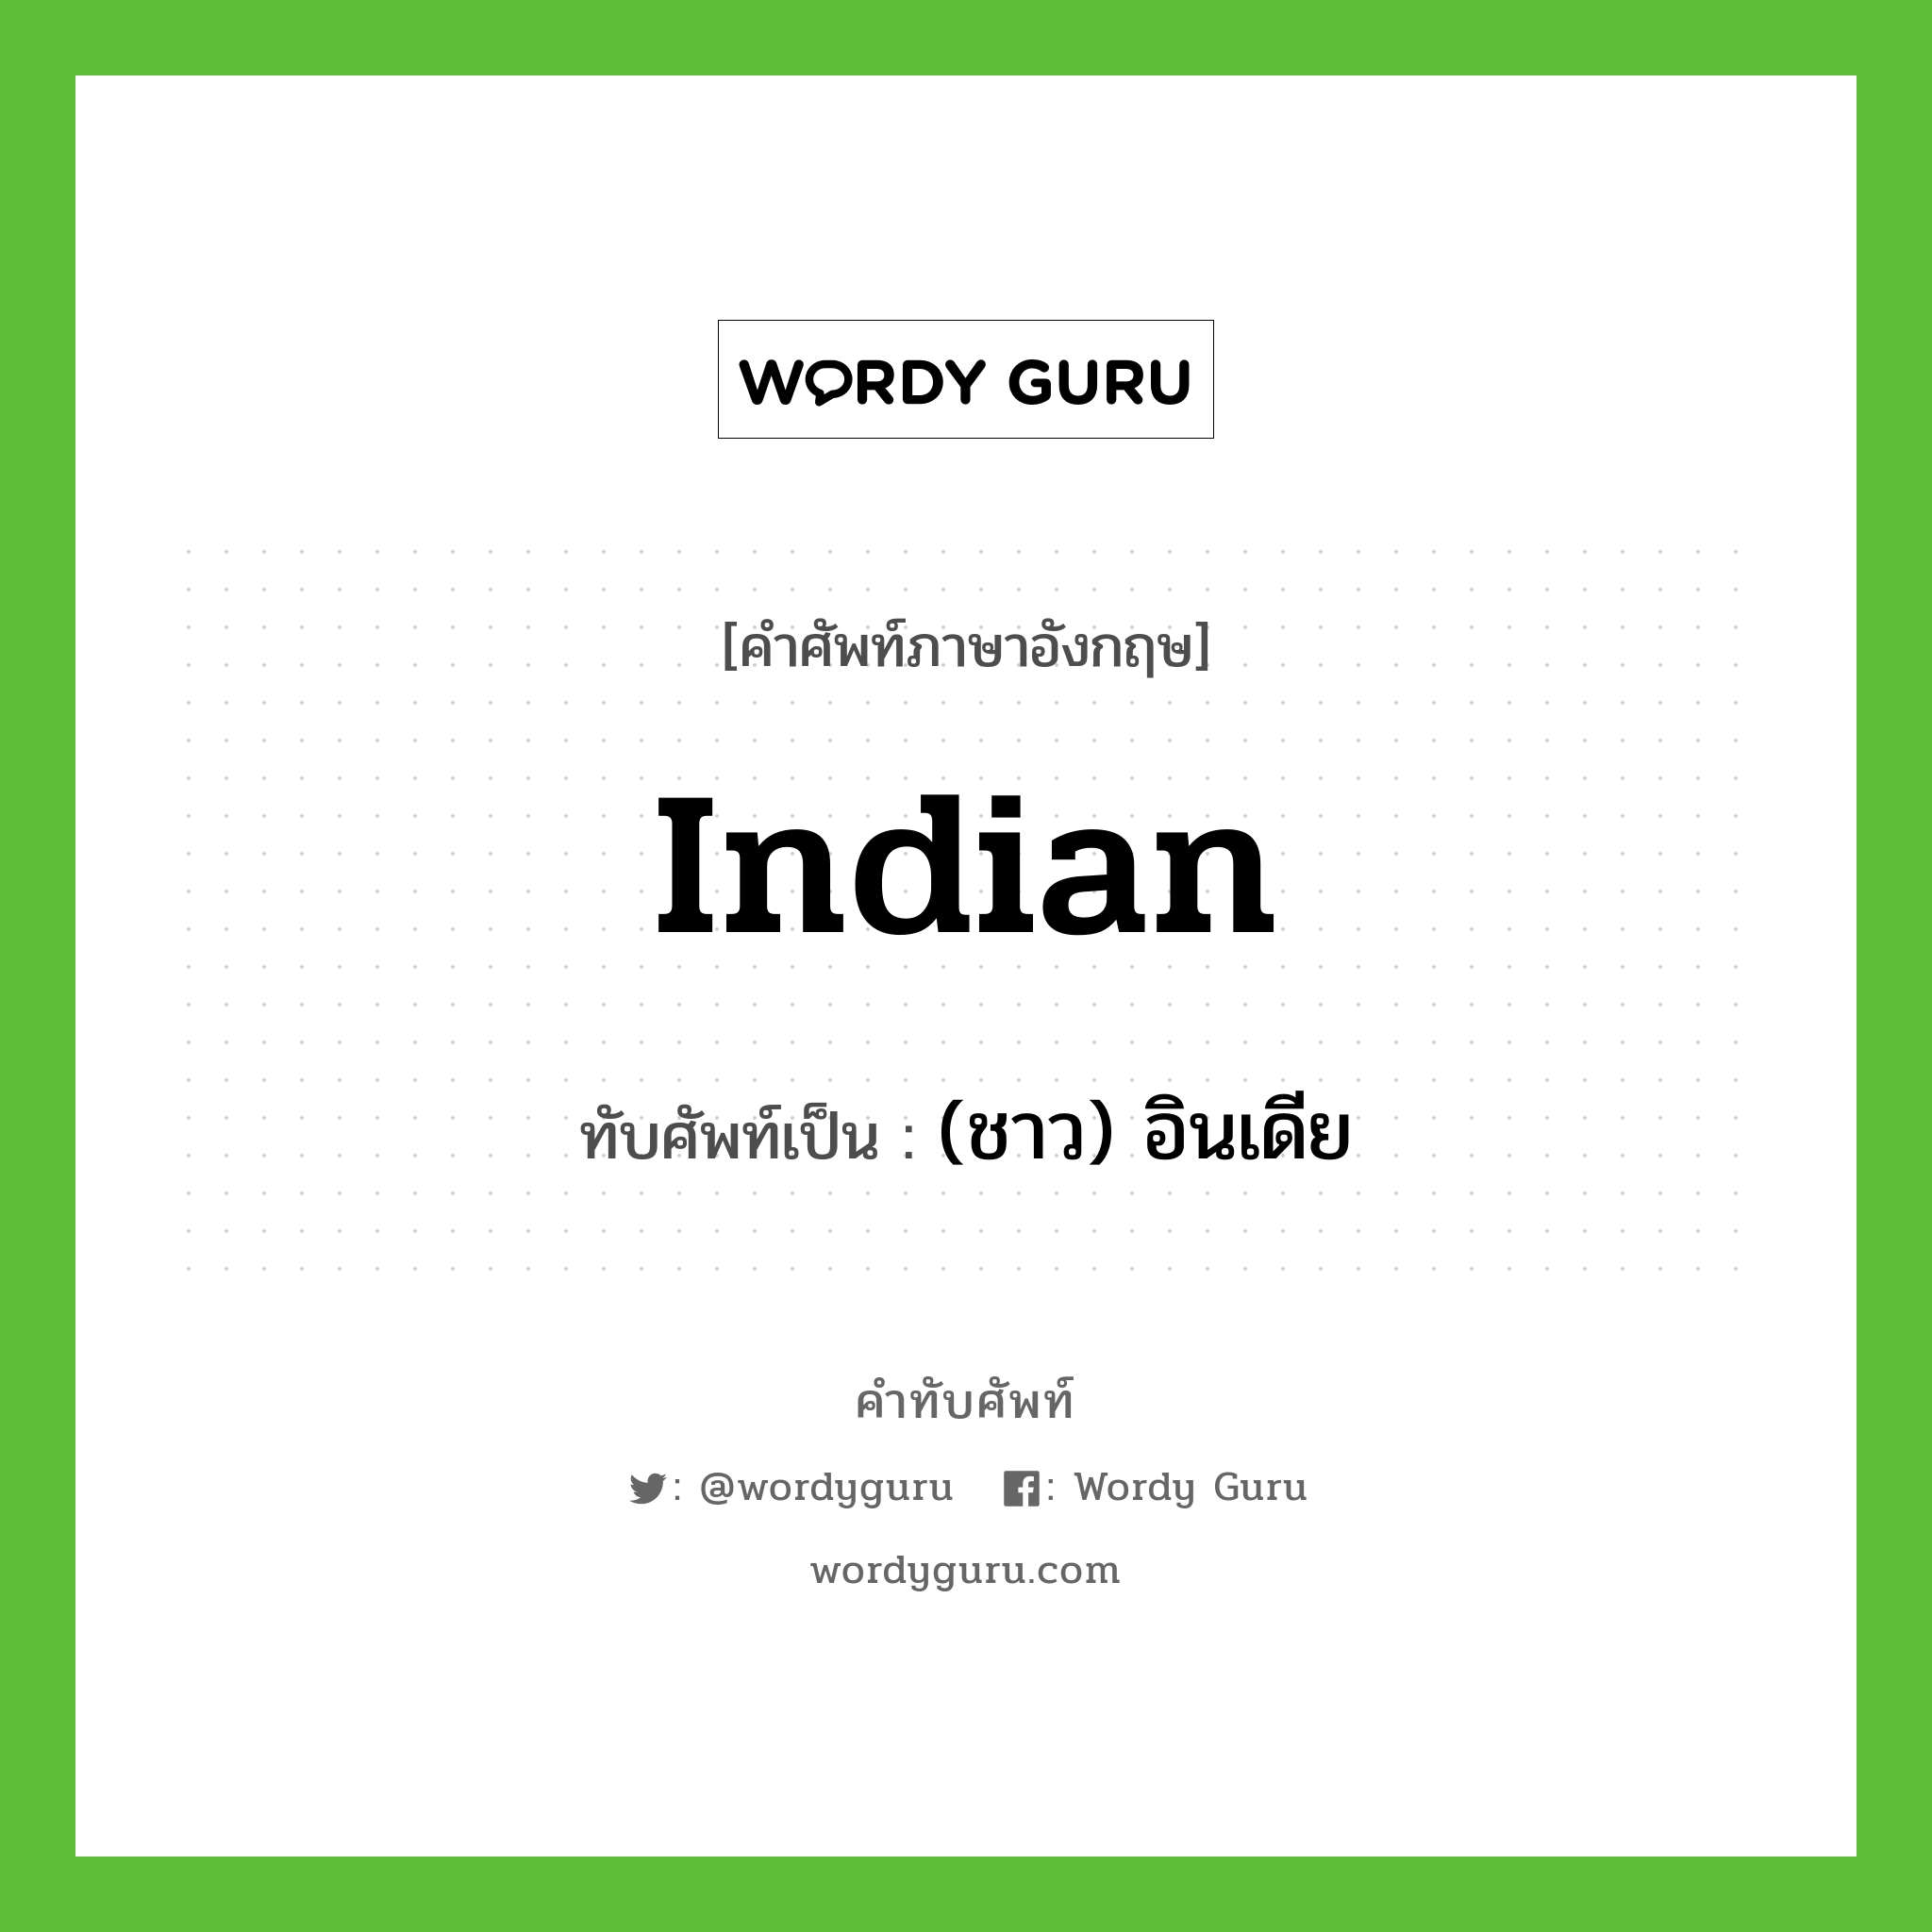 Indian เขียนเป็นคำไทยว่าอะไร?, คำศัพท์ภาษาอังกฤษ Indian ทับศัพท์เป็น (ชาว) อินเดีย